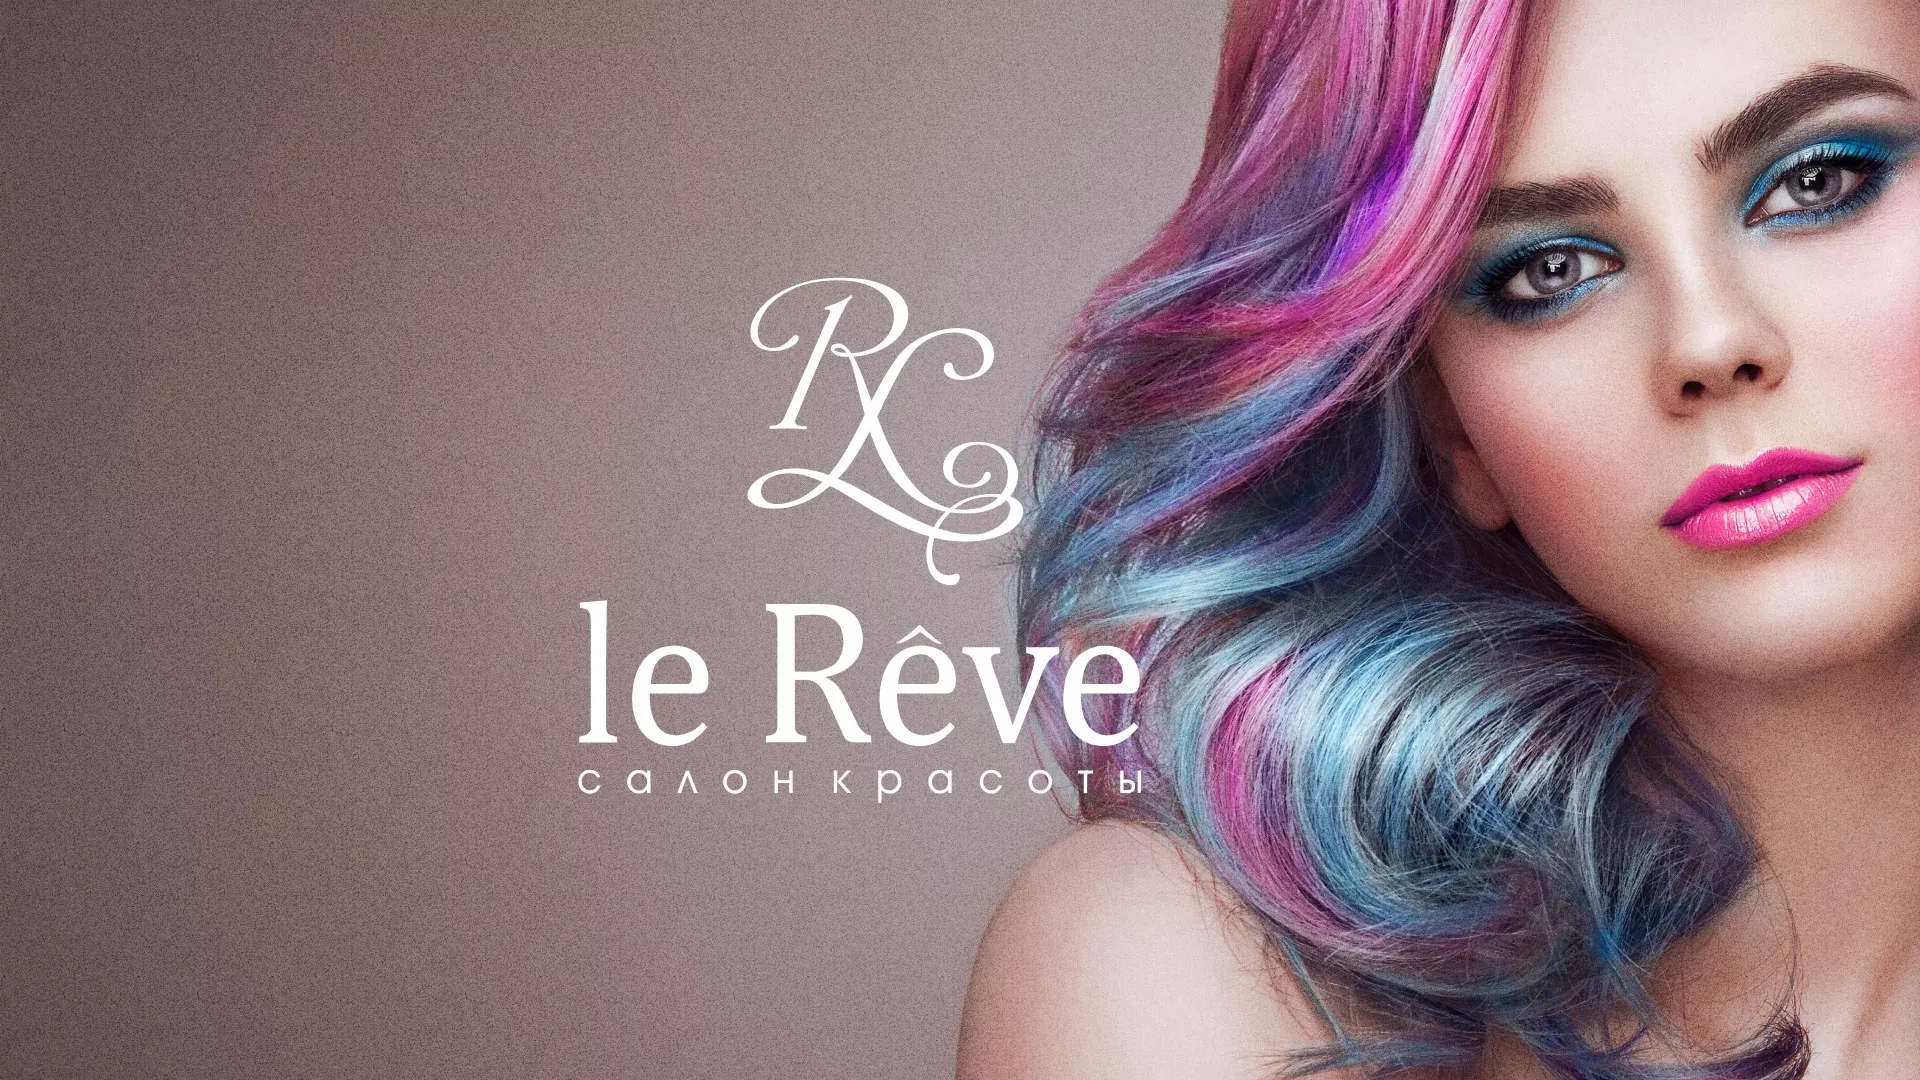 Создание сайта для салона красоты «Le Reve» в Раменском